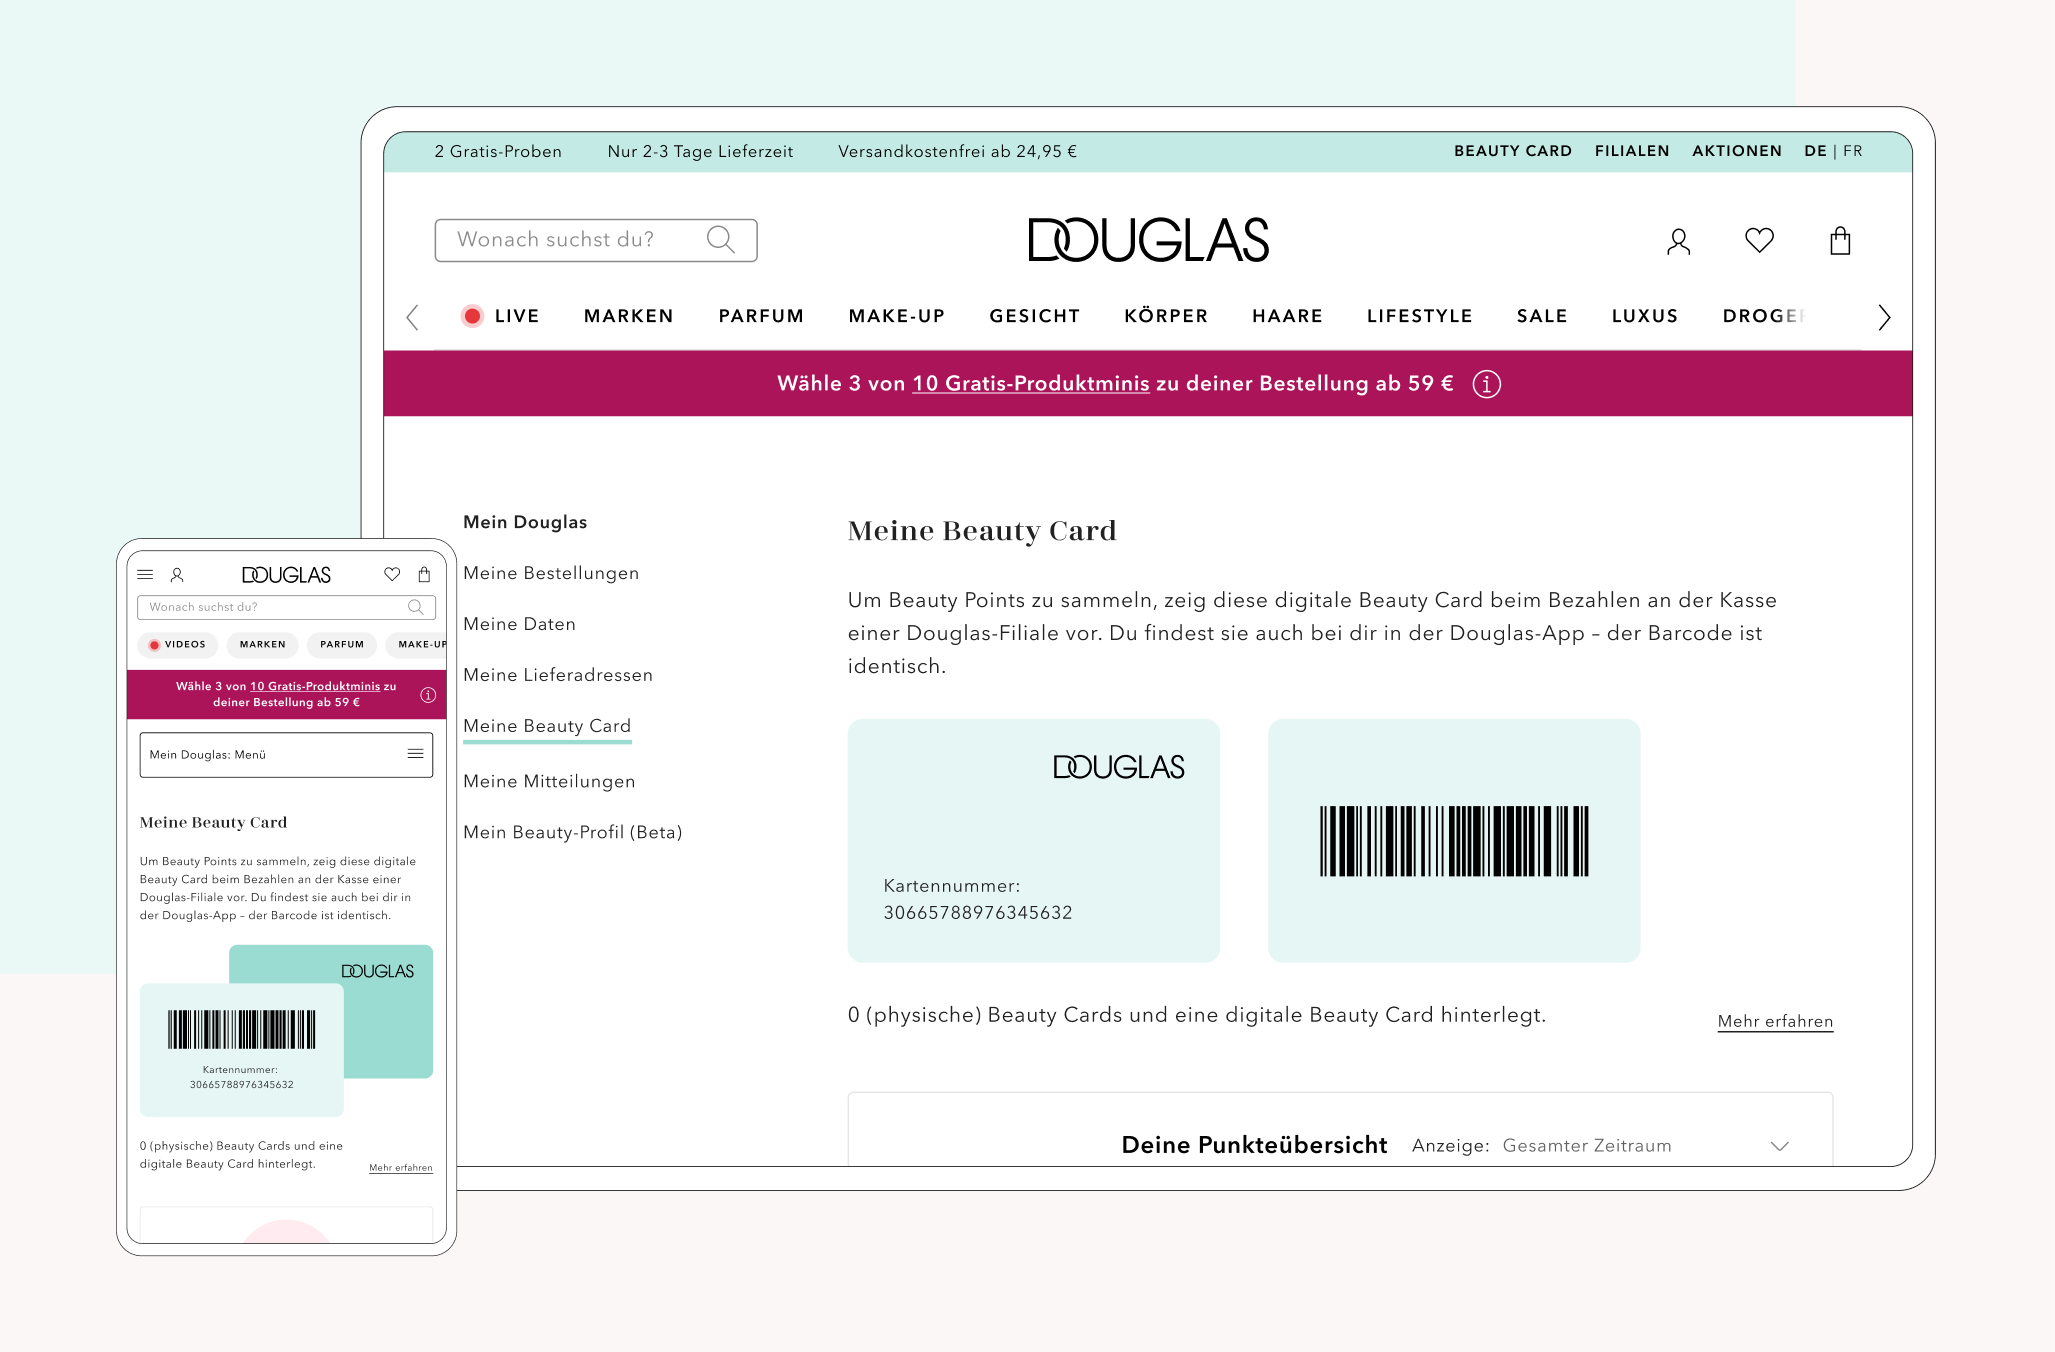 Das Bild zeigt die Douglas Beauty Card im Web